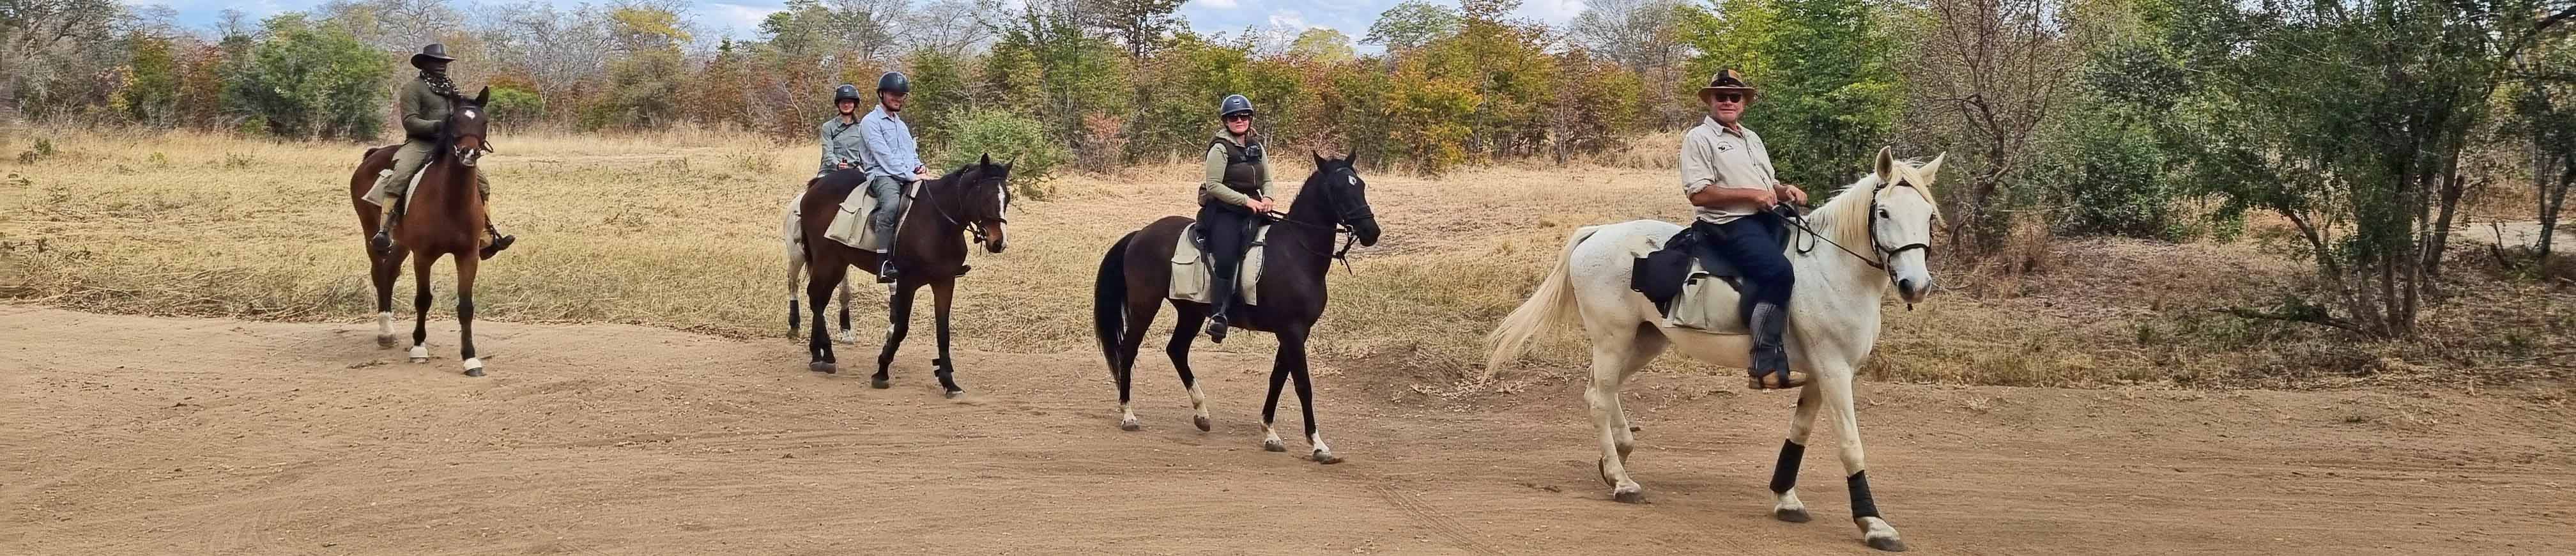 Hwange Horseback Safaris riders